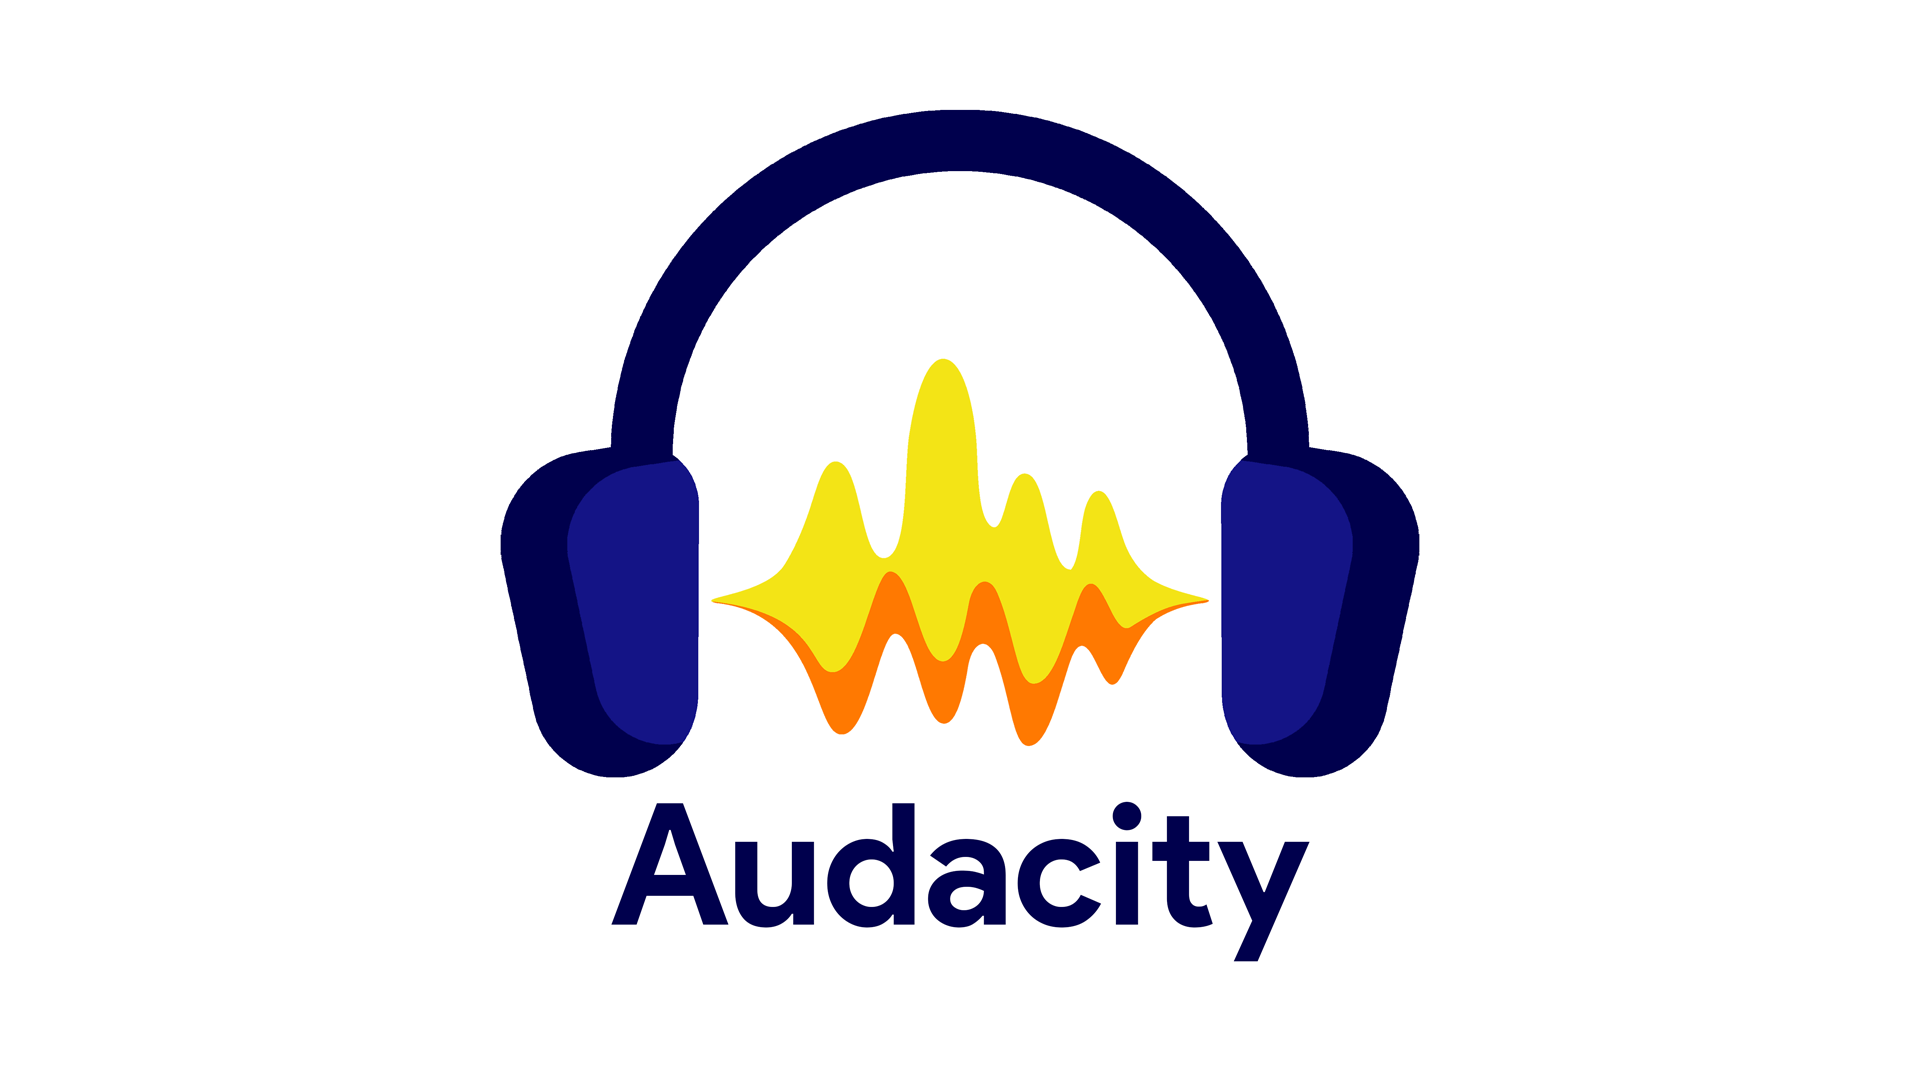 Το Audacity κατηγορείται ως spyware ύστερα από την απόκτησή του από άλλη εταιρεία